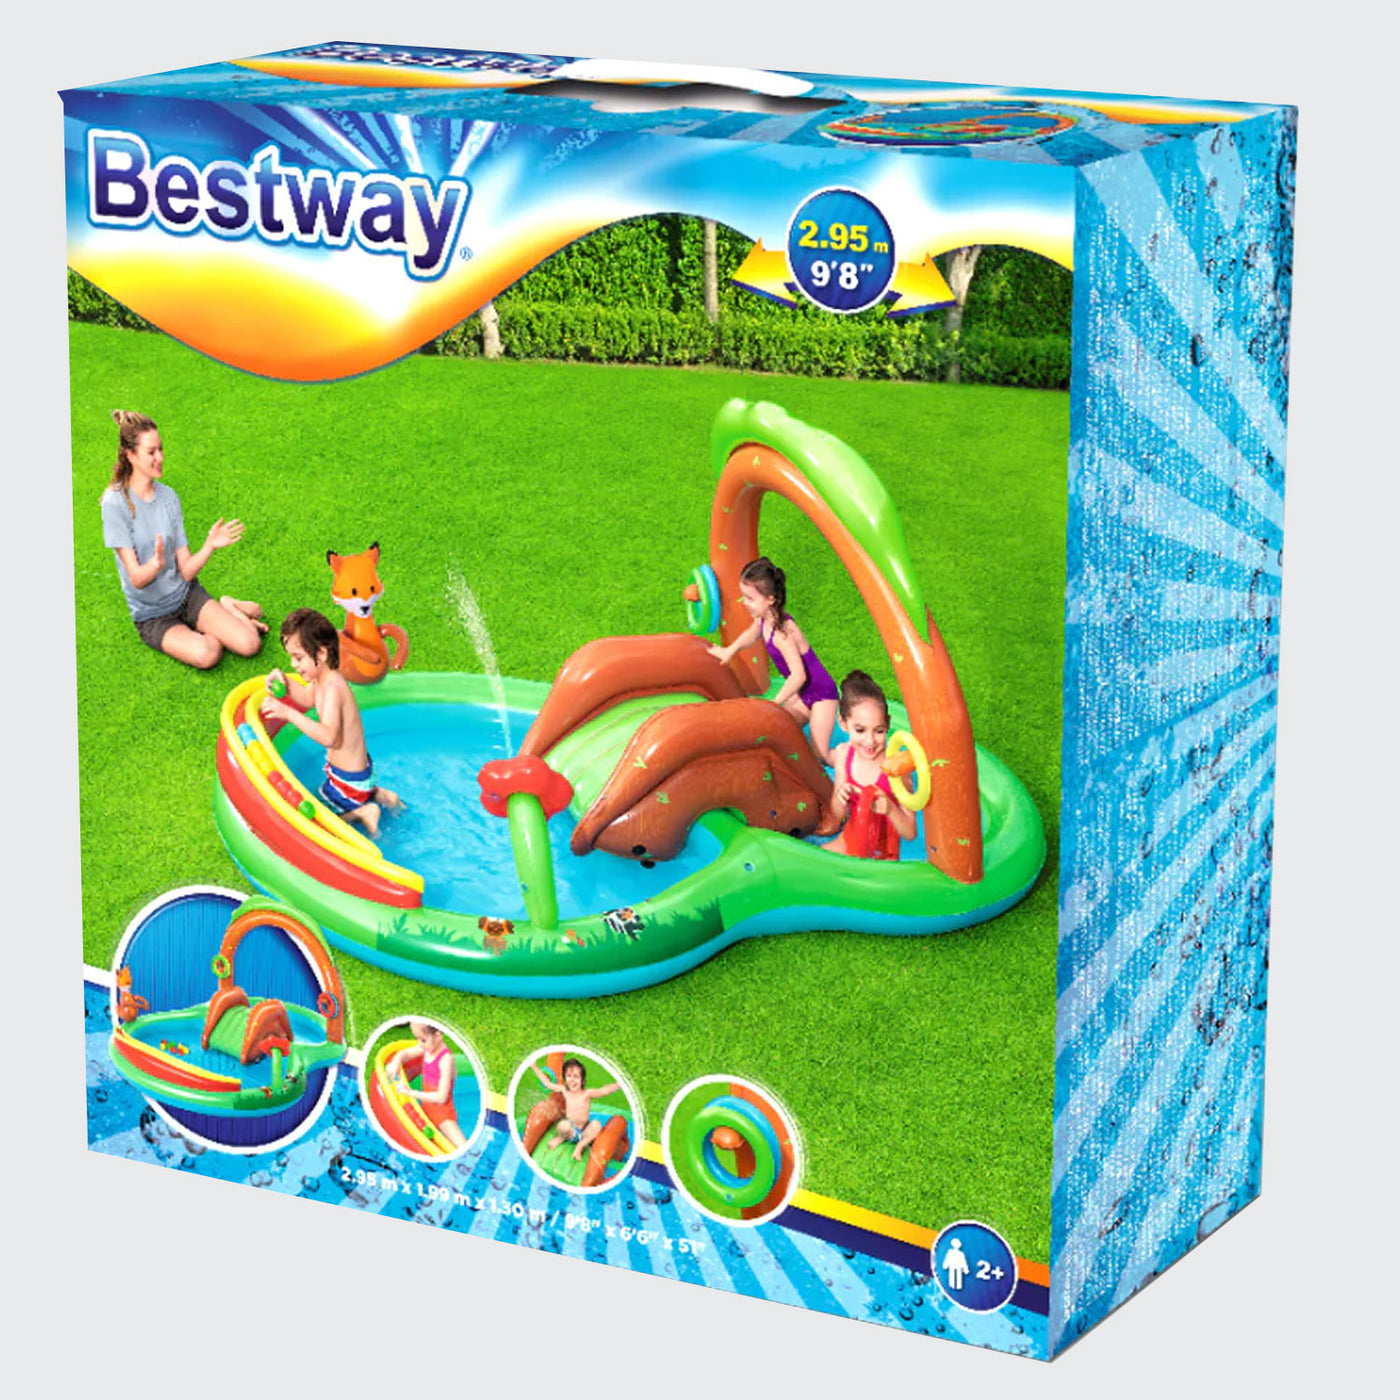 Bestway BW Slide Pool For Kids